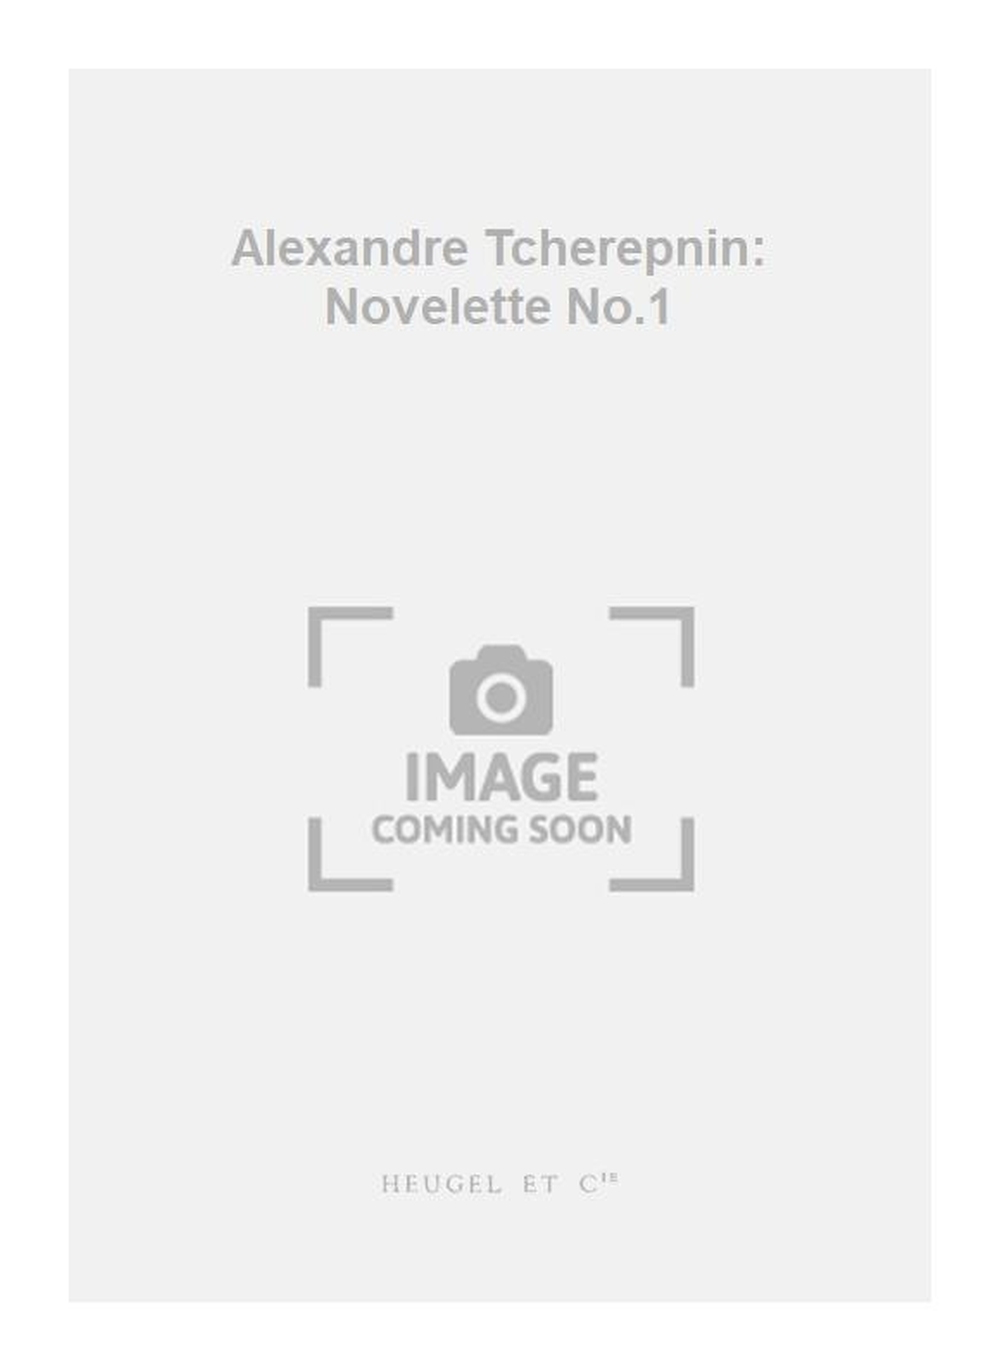 Alexander Tcherepnin: Alexandre Tcherepnin: Novelette No.1